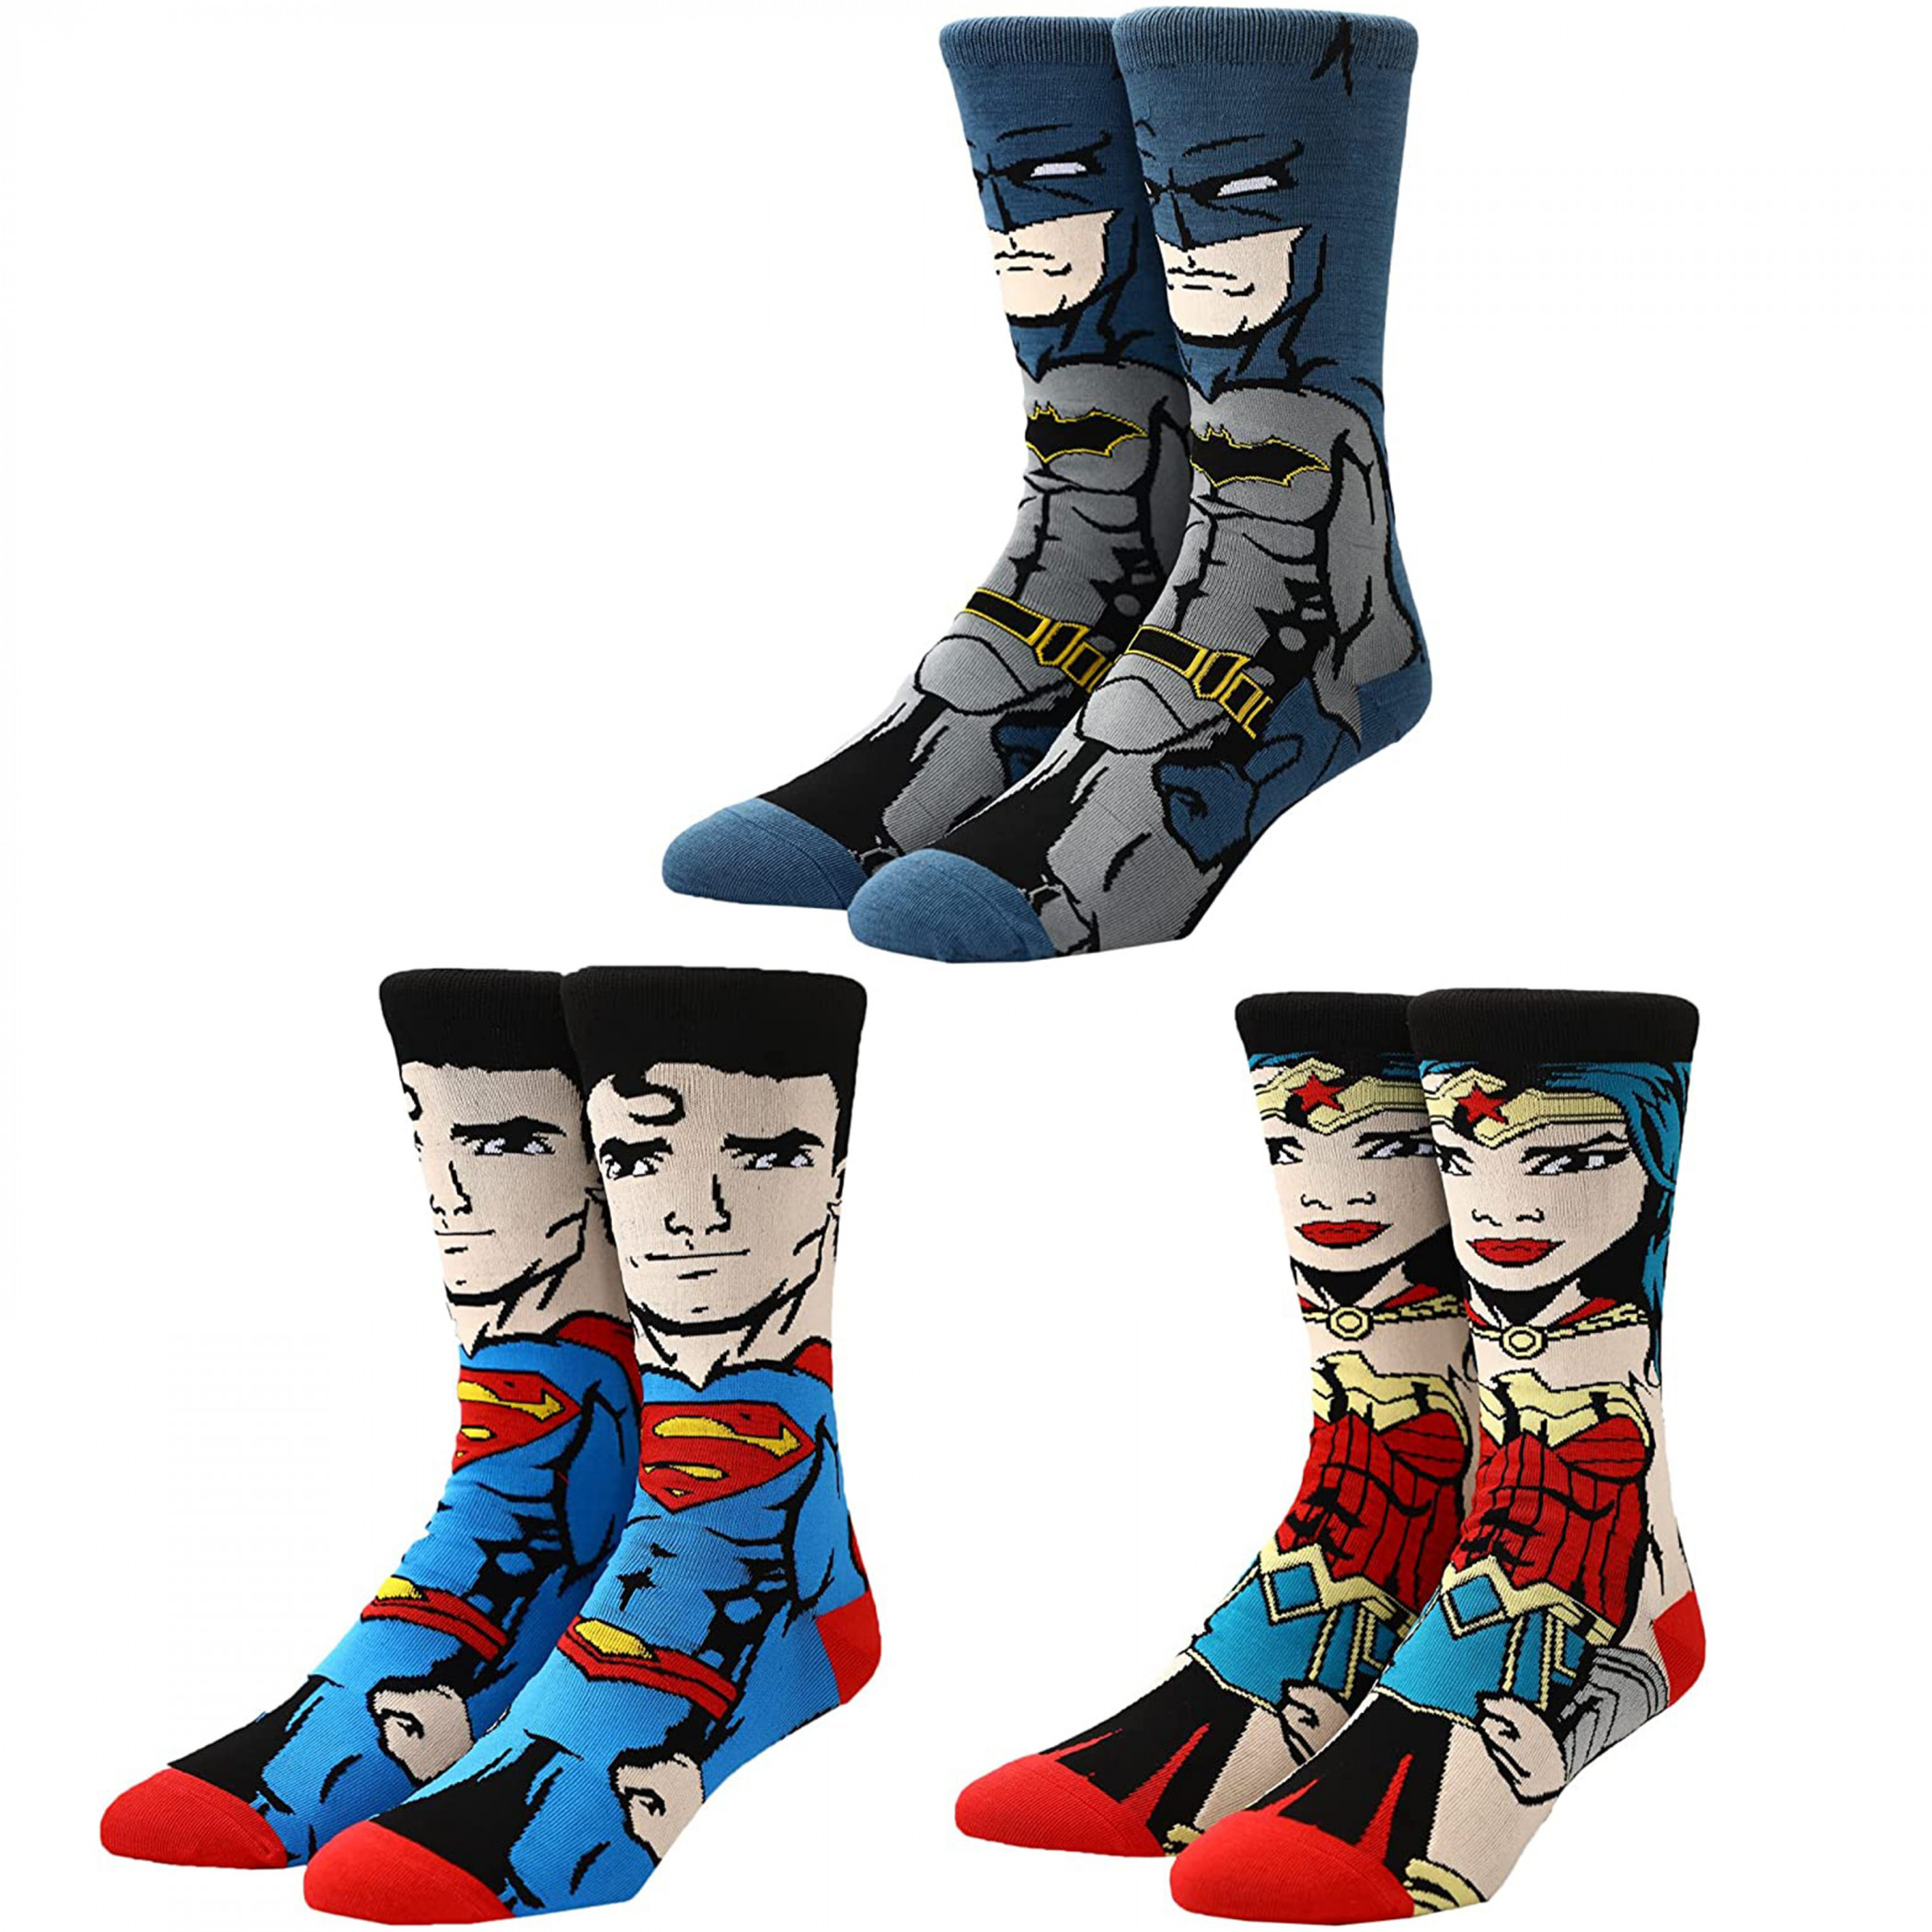 DC Comics Justice League 3-Pair Pack of Crew Socks